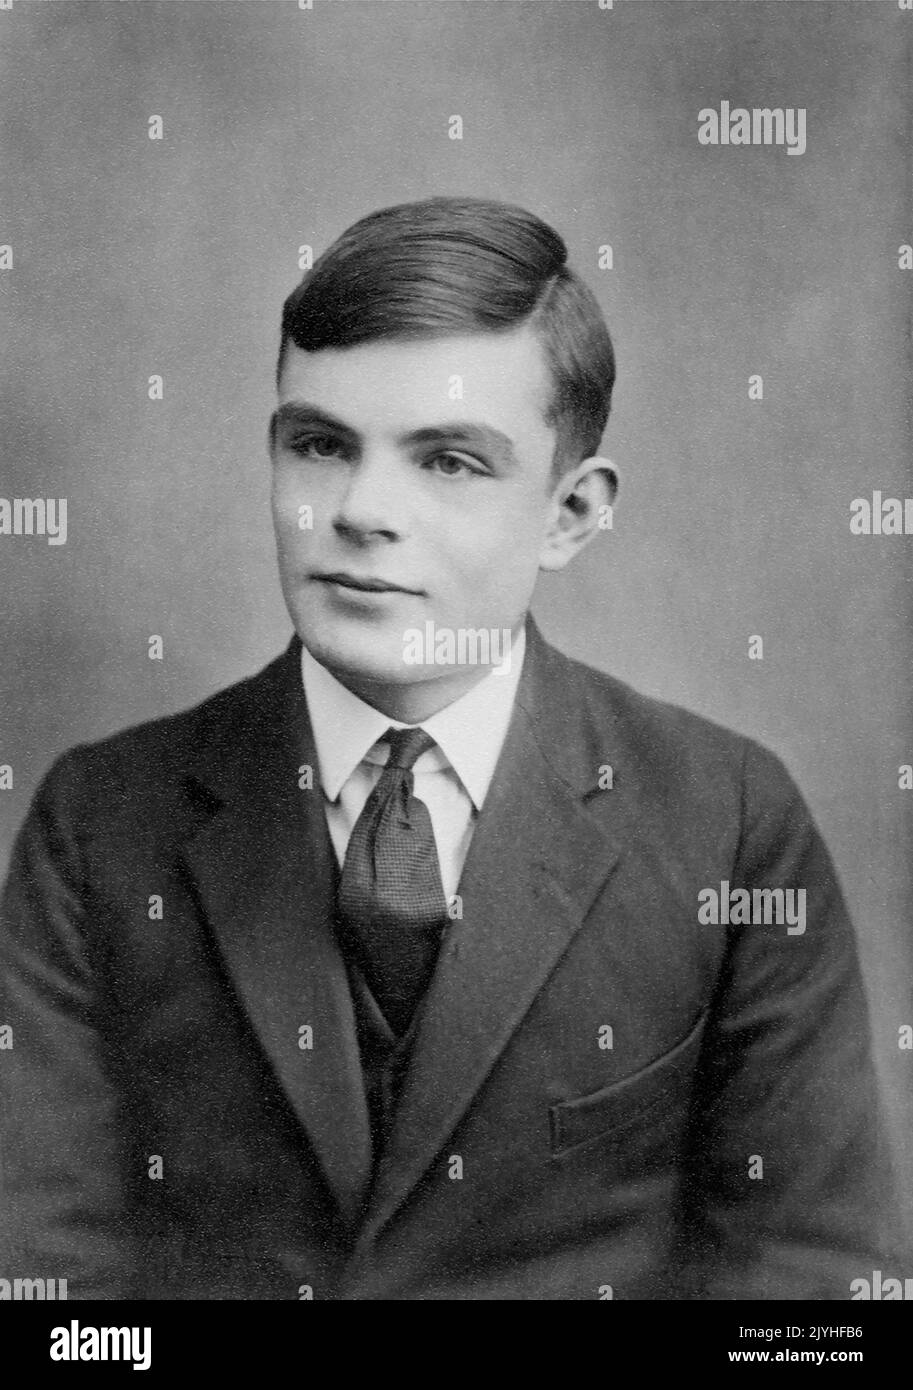 Gran Bretagna / UK: Alan Turing (1912-1954), informatico e crittologo strumentale nel rompere il codice macchina 'enigma' della Germania durante la seconda guerra mondiale, c.. 1928. Alan Mathison Turing era un pioniere britannico di informatica, matematico, logicista, crittanalista, filosofo, biologo matematico, maratona e corridore ultra distanza. Era molto influente nello sviluppo dell'informatica. Foto Stock